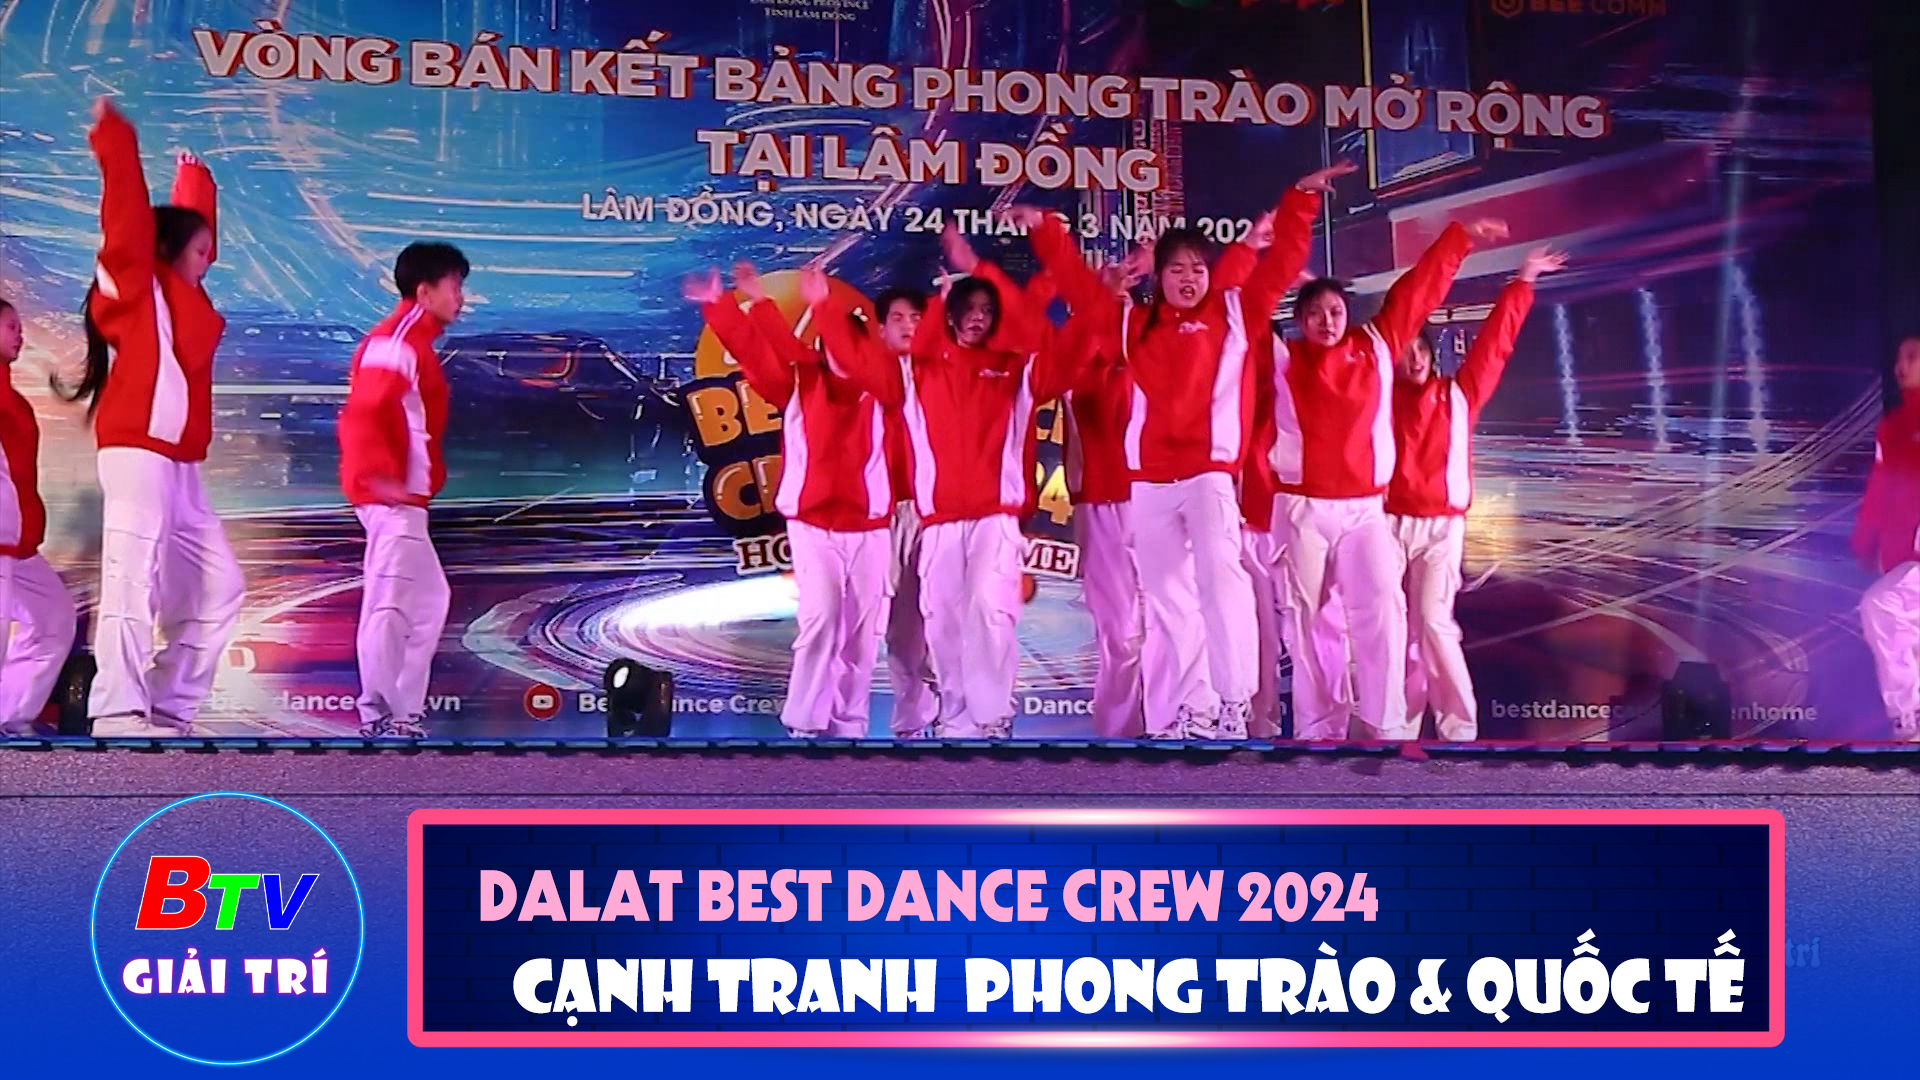 Dalat Best Dance Crew 2024 - Hoa Sen Home International Cup - Cạnh tranh ở bảng Phong trào và Quốc tế | Điểm hẹn giải trí 